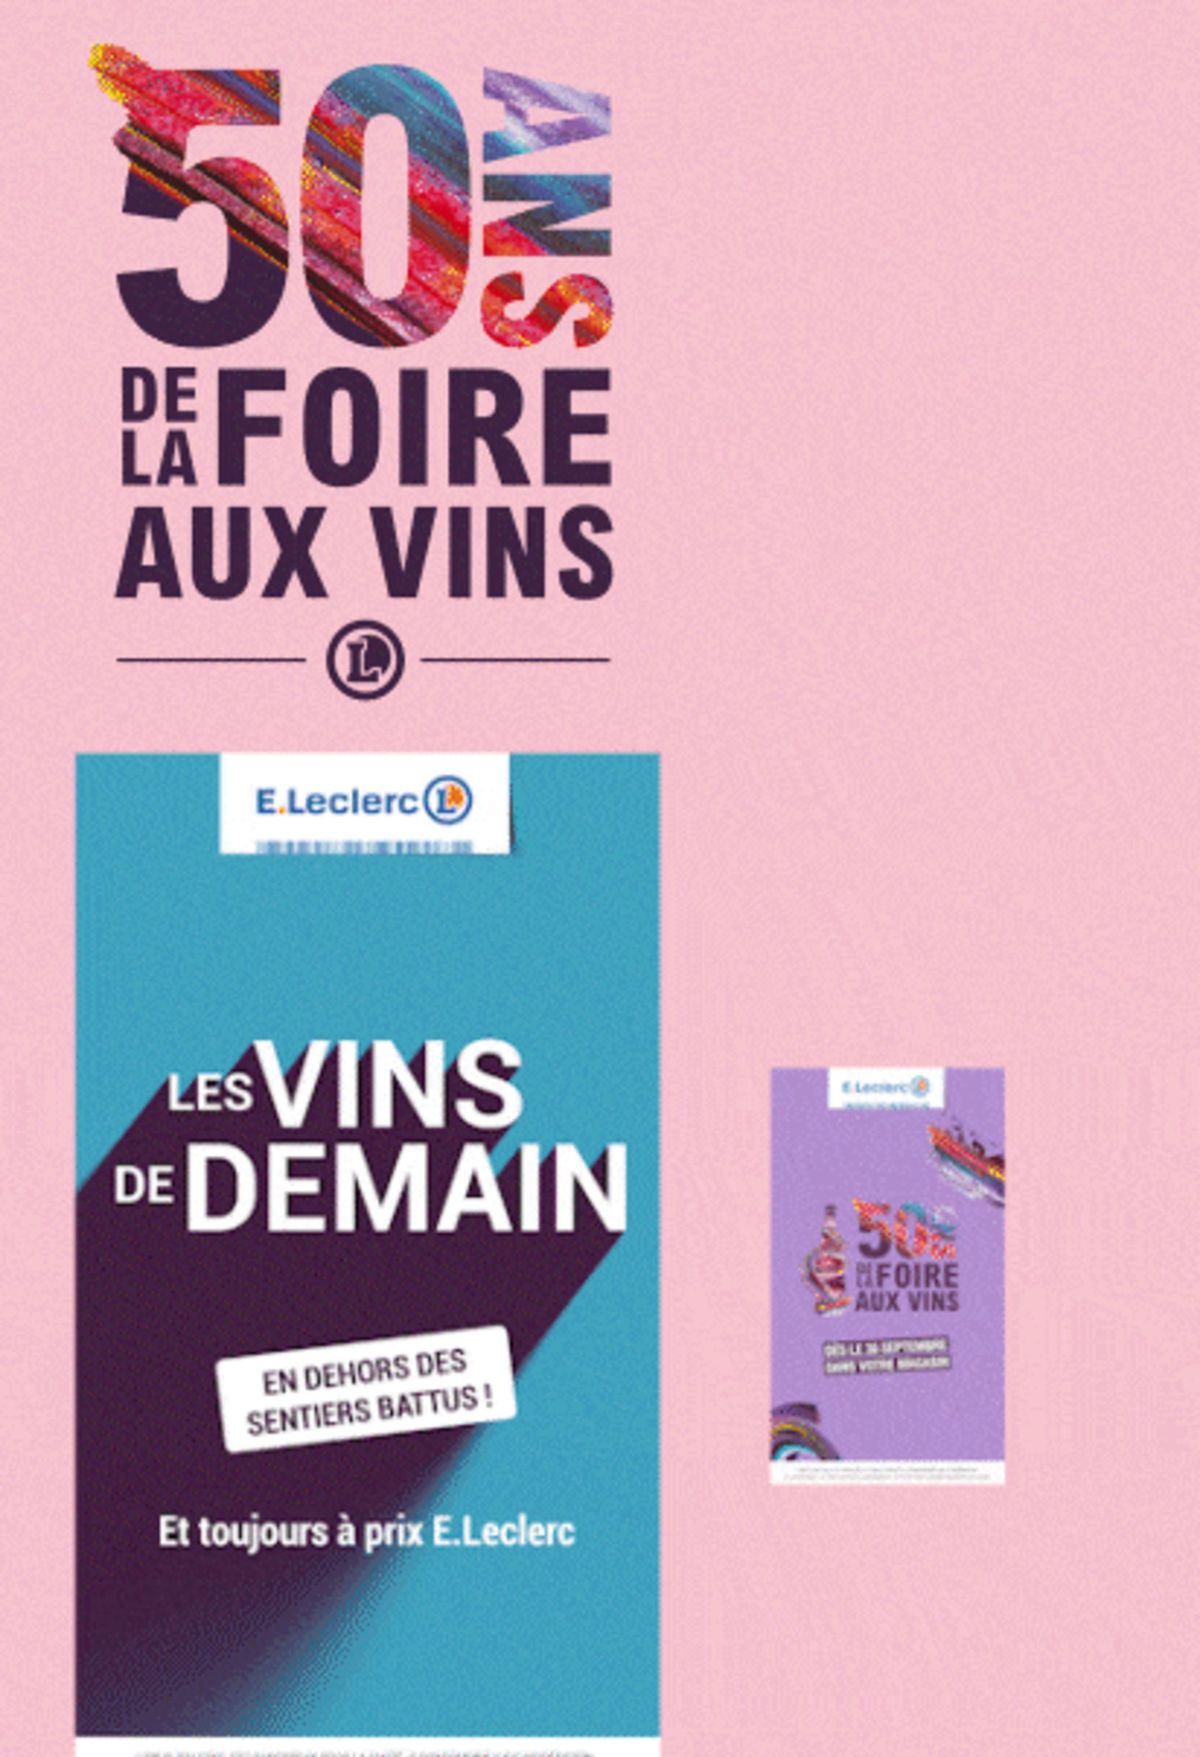 Catalogue Foire Aux Vins - Mixte, page 01207